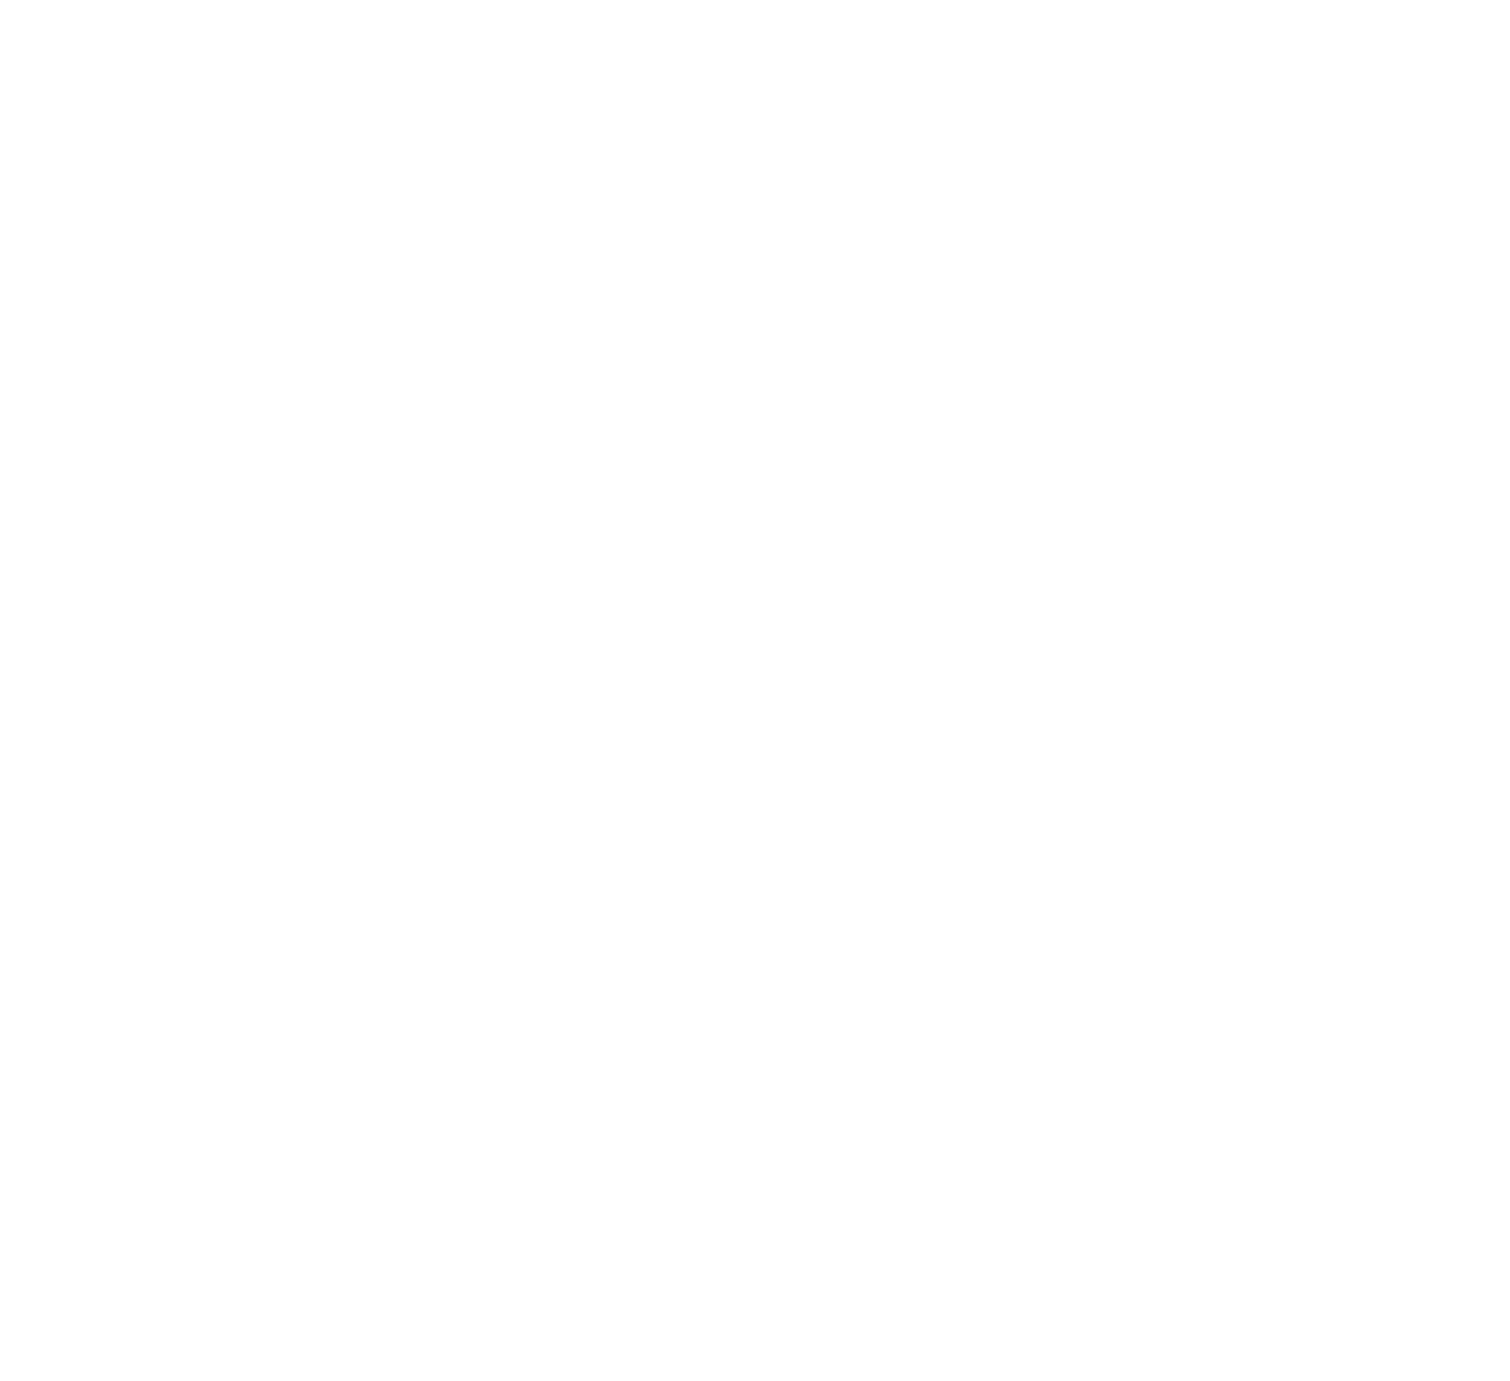 Hallmark Financial Services logo pour fonds sombres (PNG transparent)